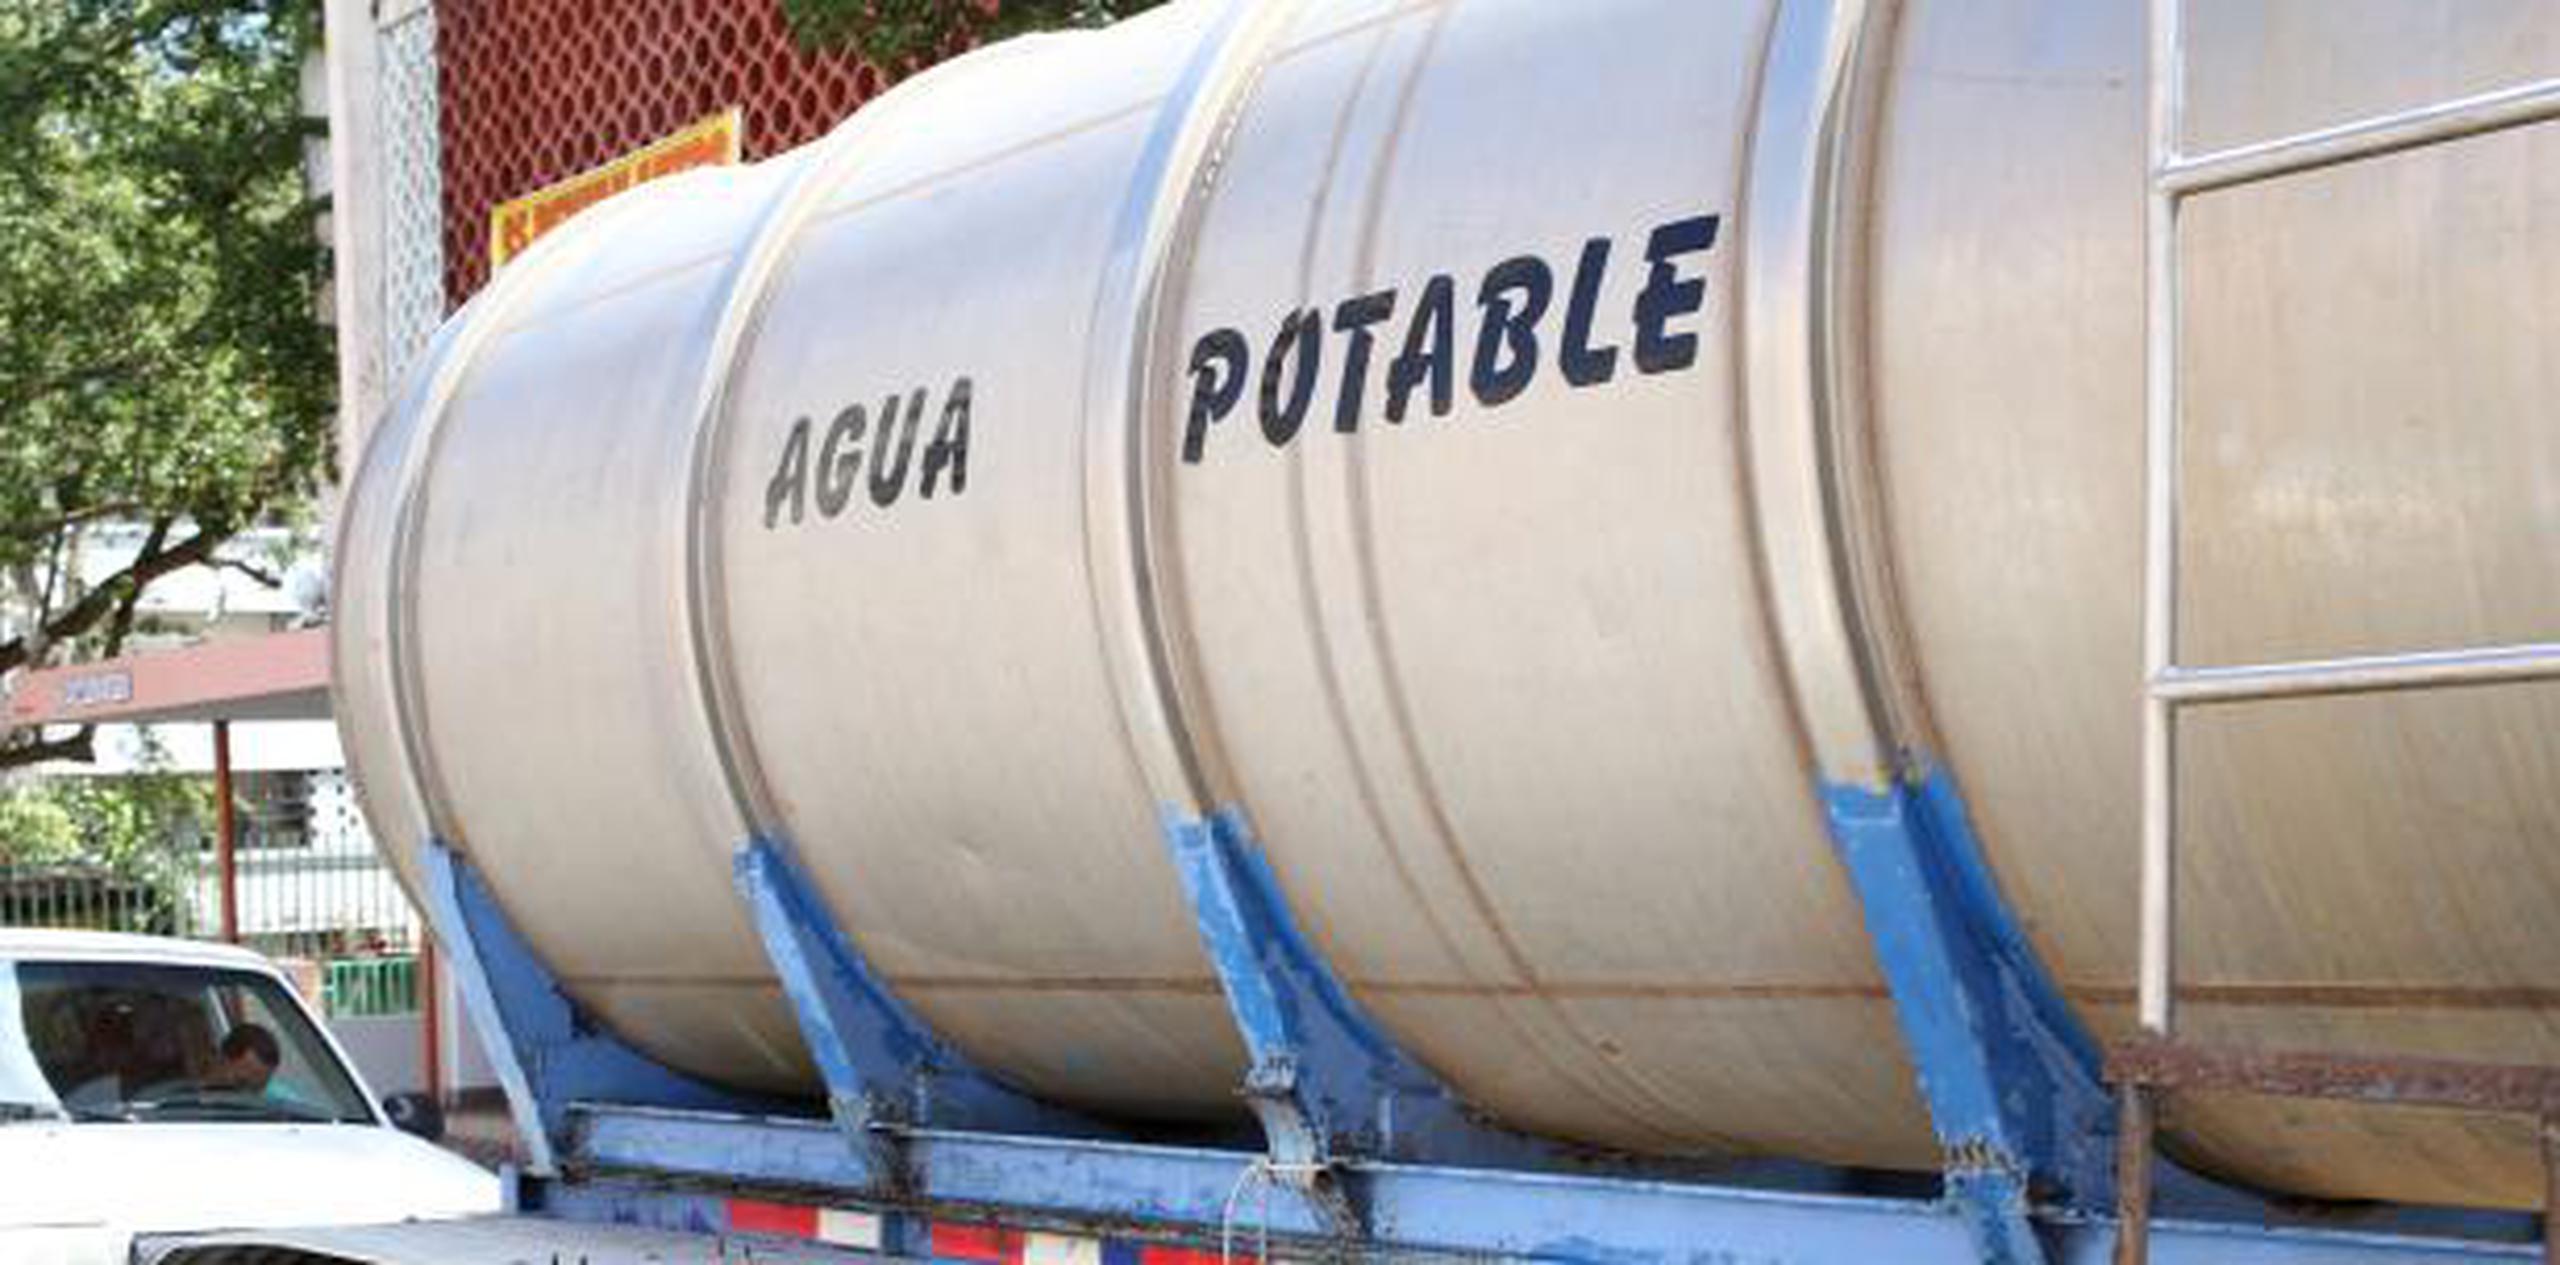 “Los camiones de agua potable que sirven de oasis se les han realizado las pruebas de calidad, requeridas por las agencias reguladoras, para asegurar su potabilidad". indicó el presidente ejecutivo de la AAA, Elí Díaz Atienza. (Archivo)